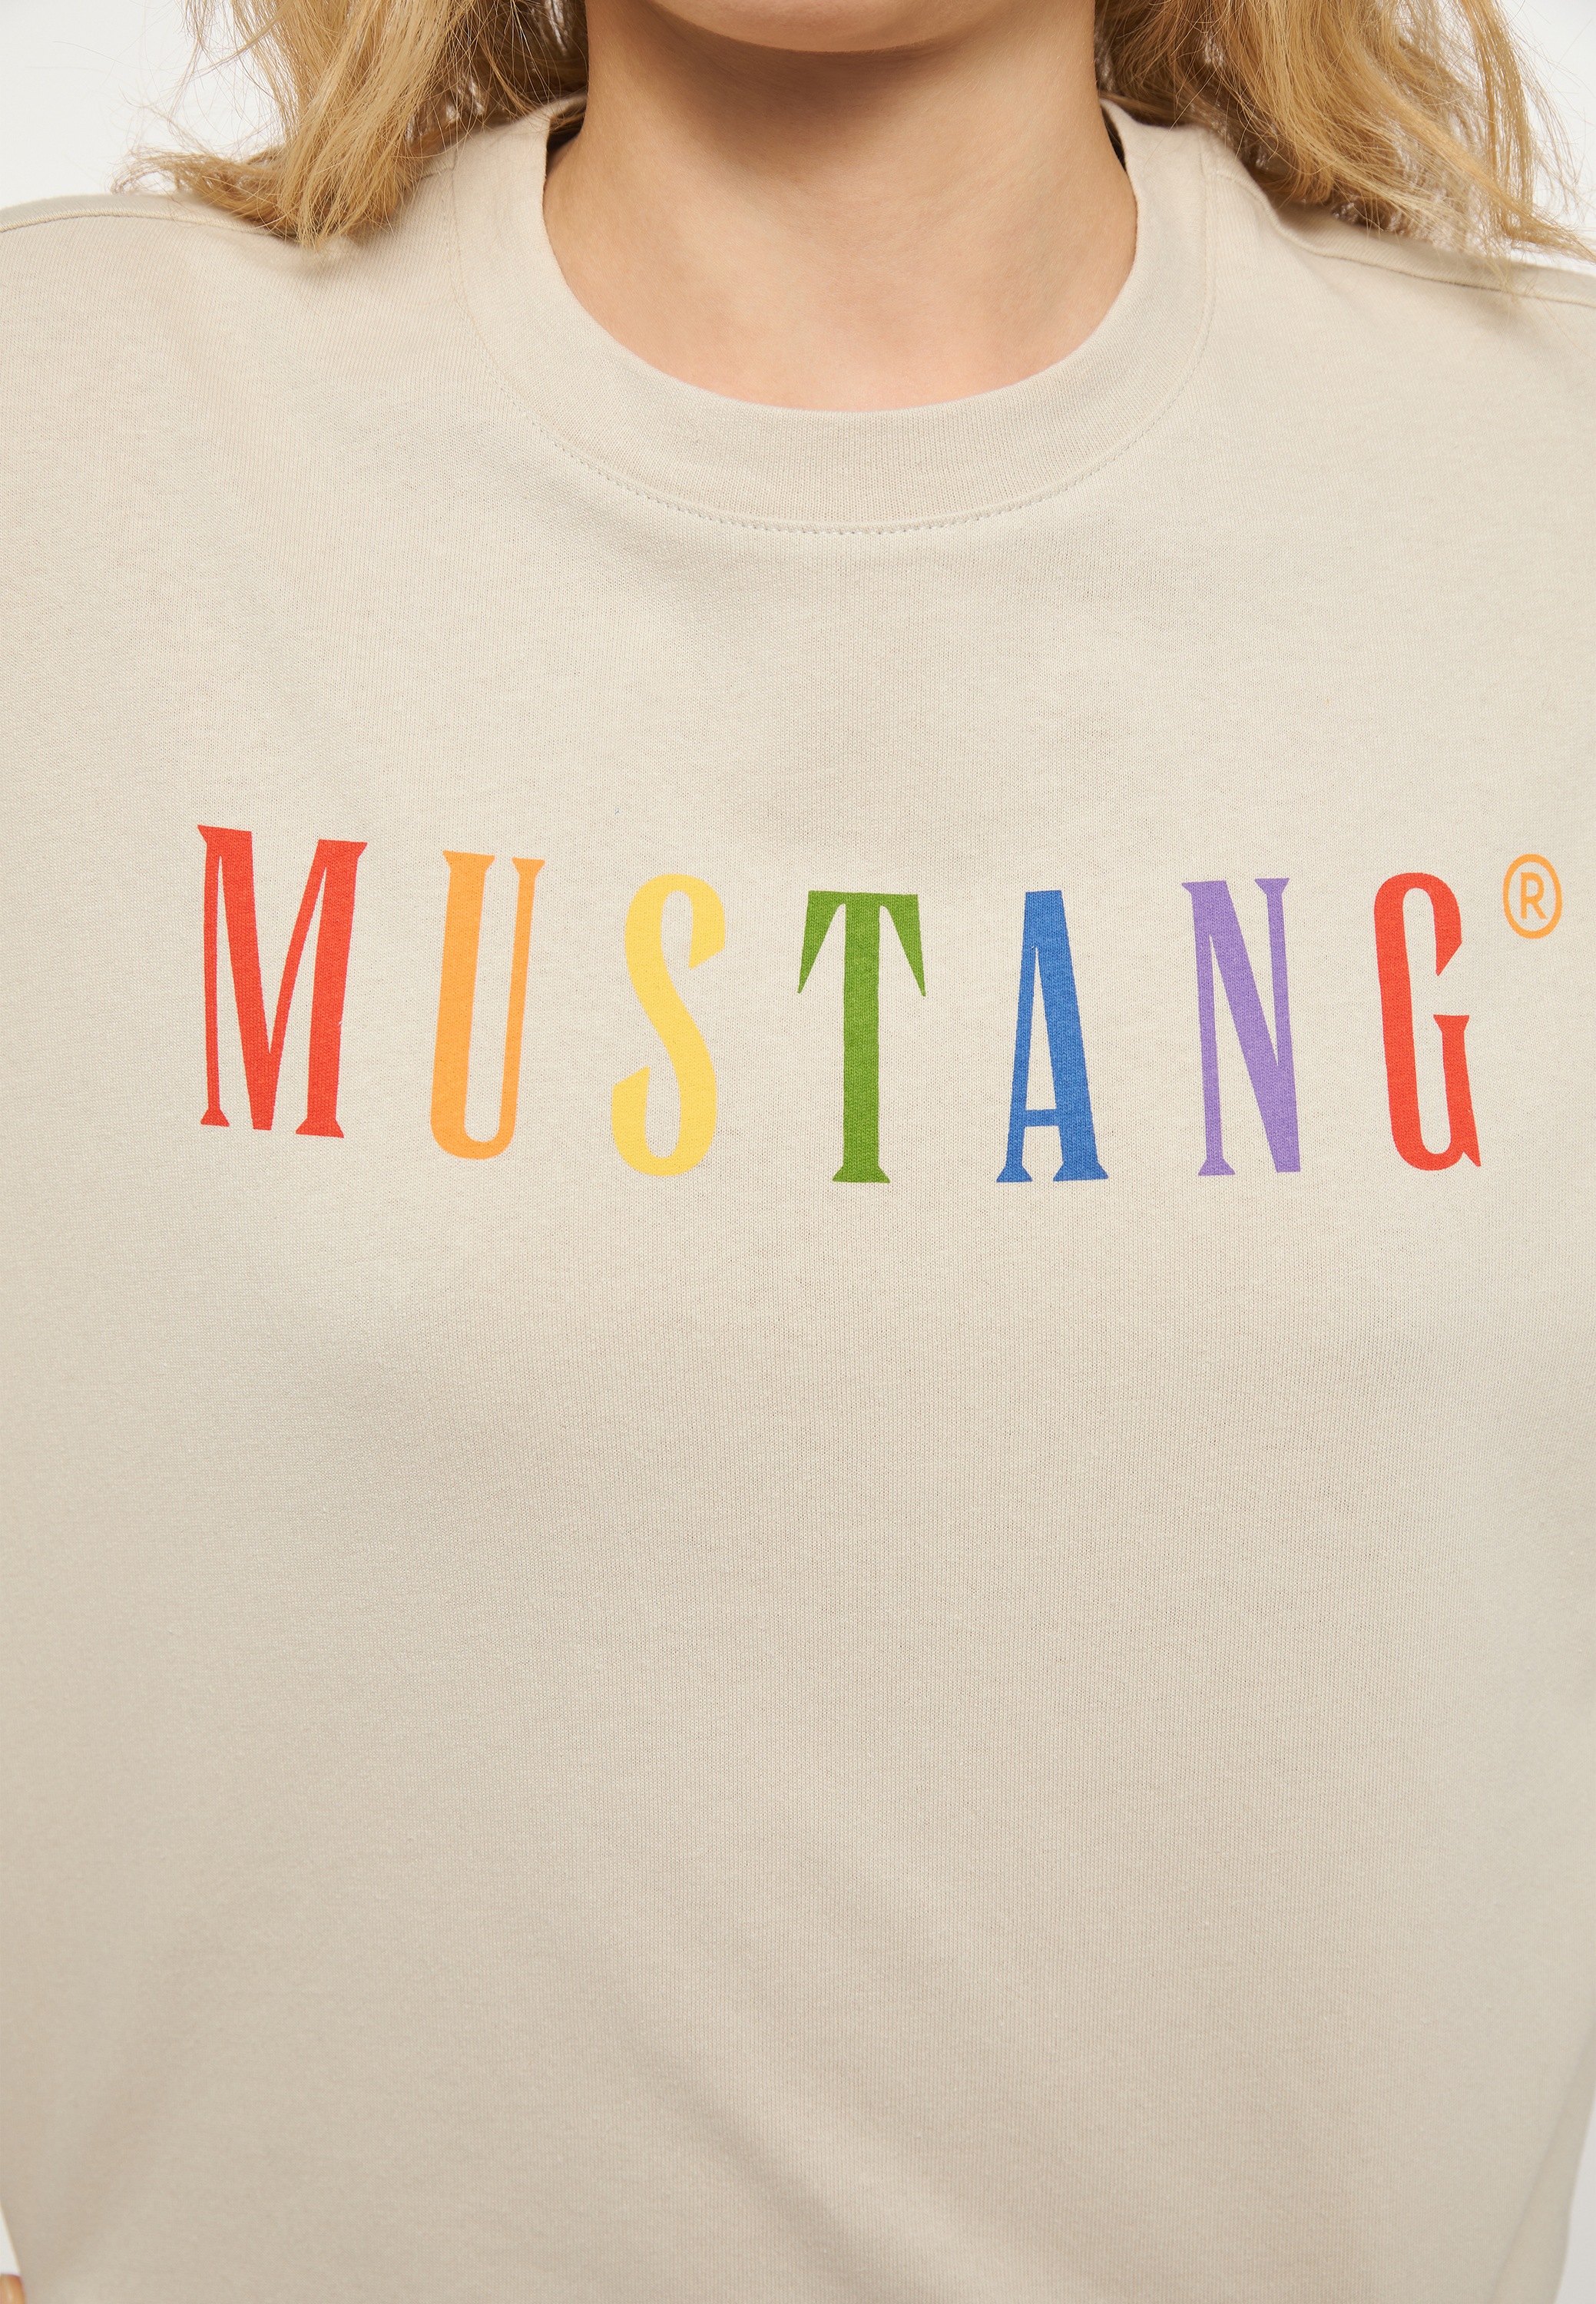 OTTOversand bei T-Shirt Kurzarmshirt »Mustang T-Shirt« MUSTANG